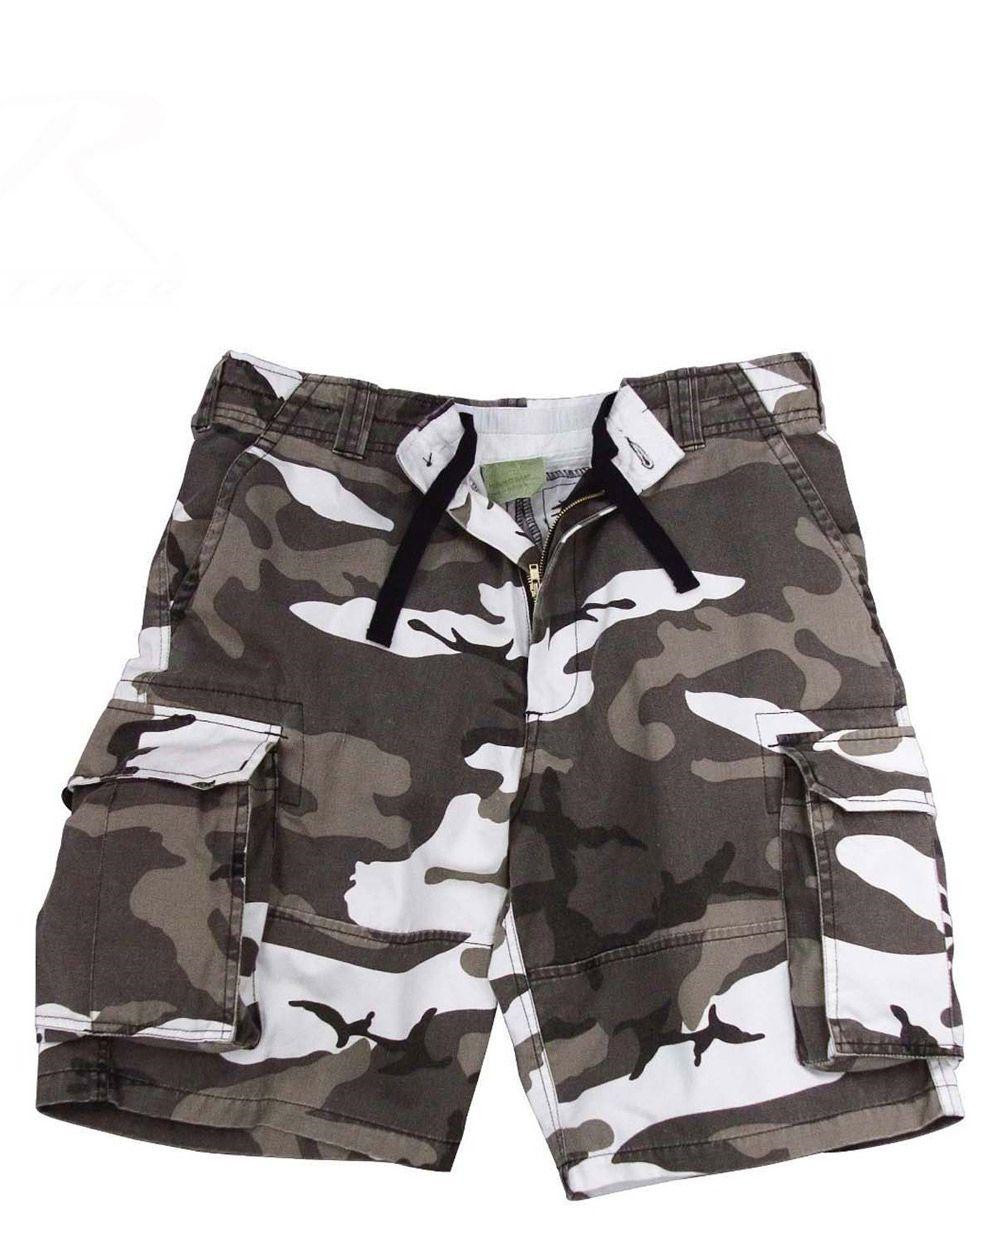 12: Rothco Cargo shorts (Urban Camo, M)